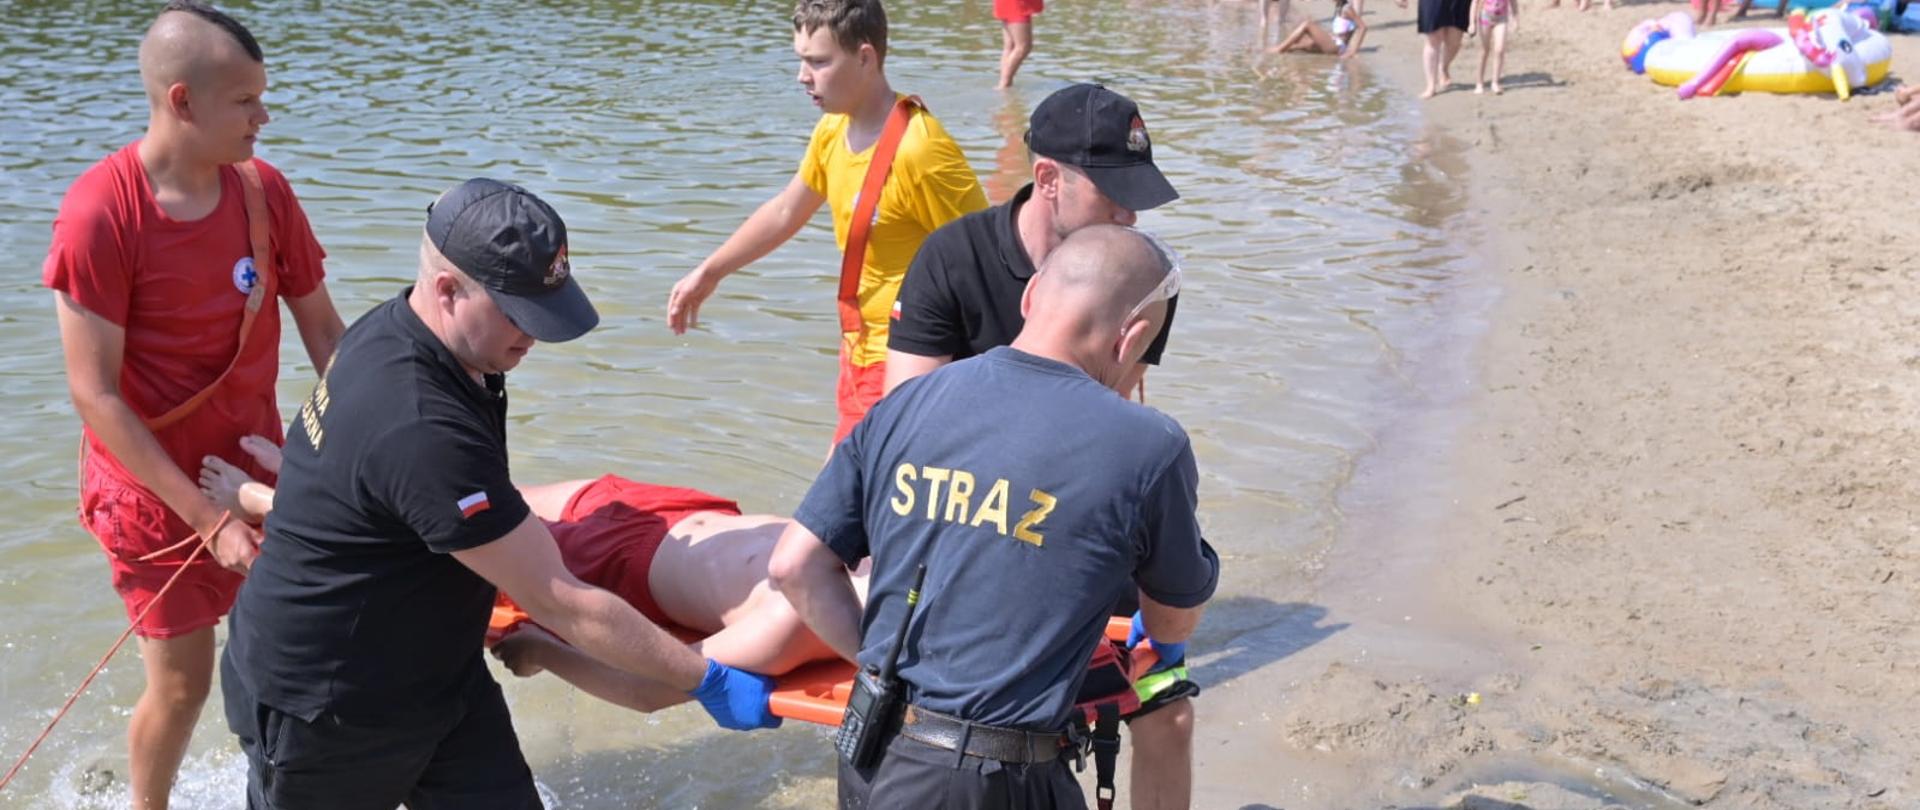 Na zdjęciu widoczni strażacy i ratownicy wodni wynoszący na desce z wody osobę poszkodowaną.